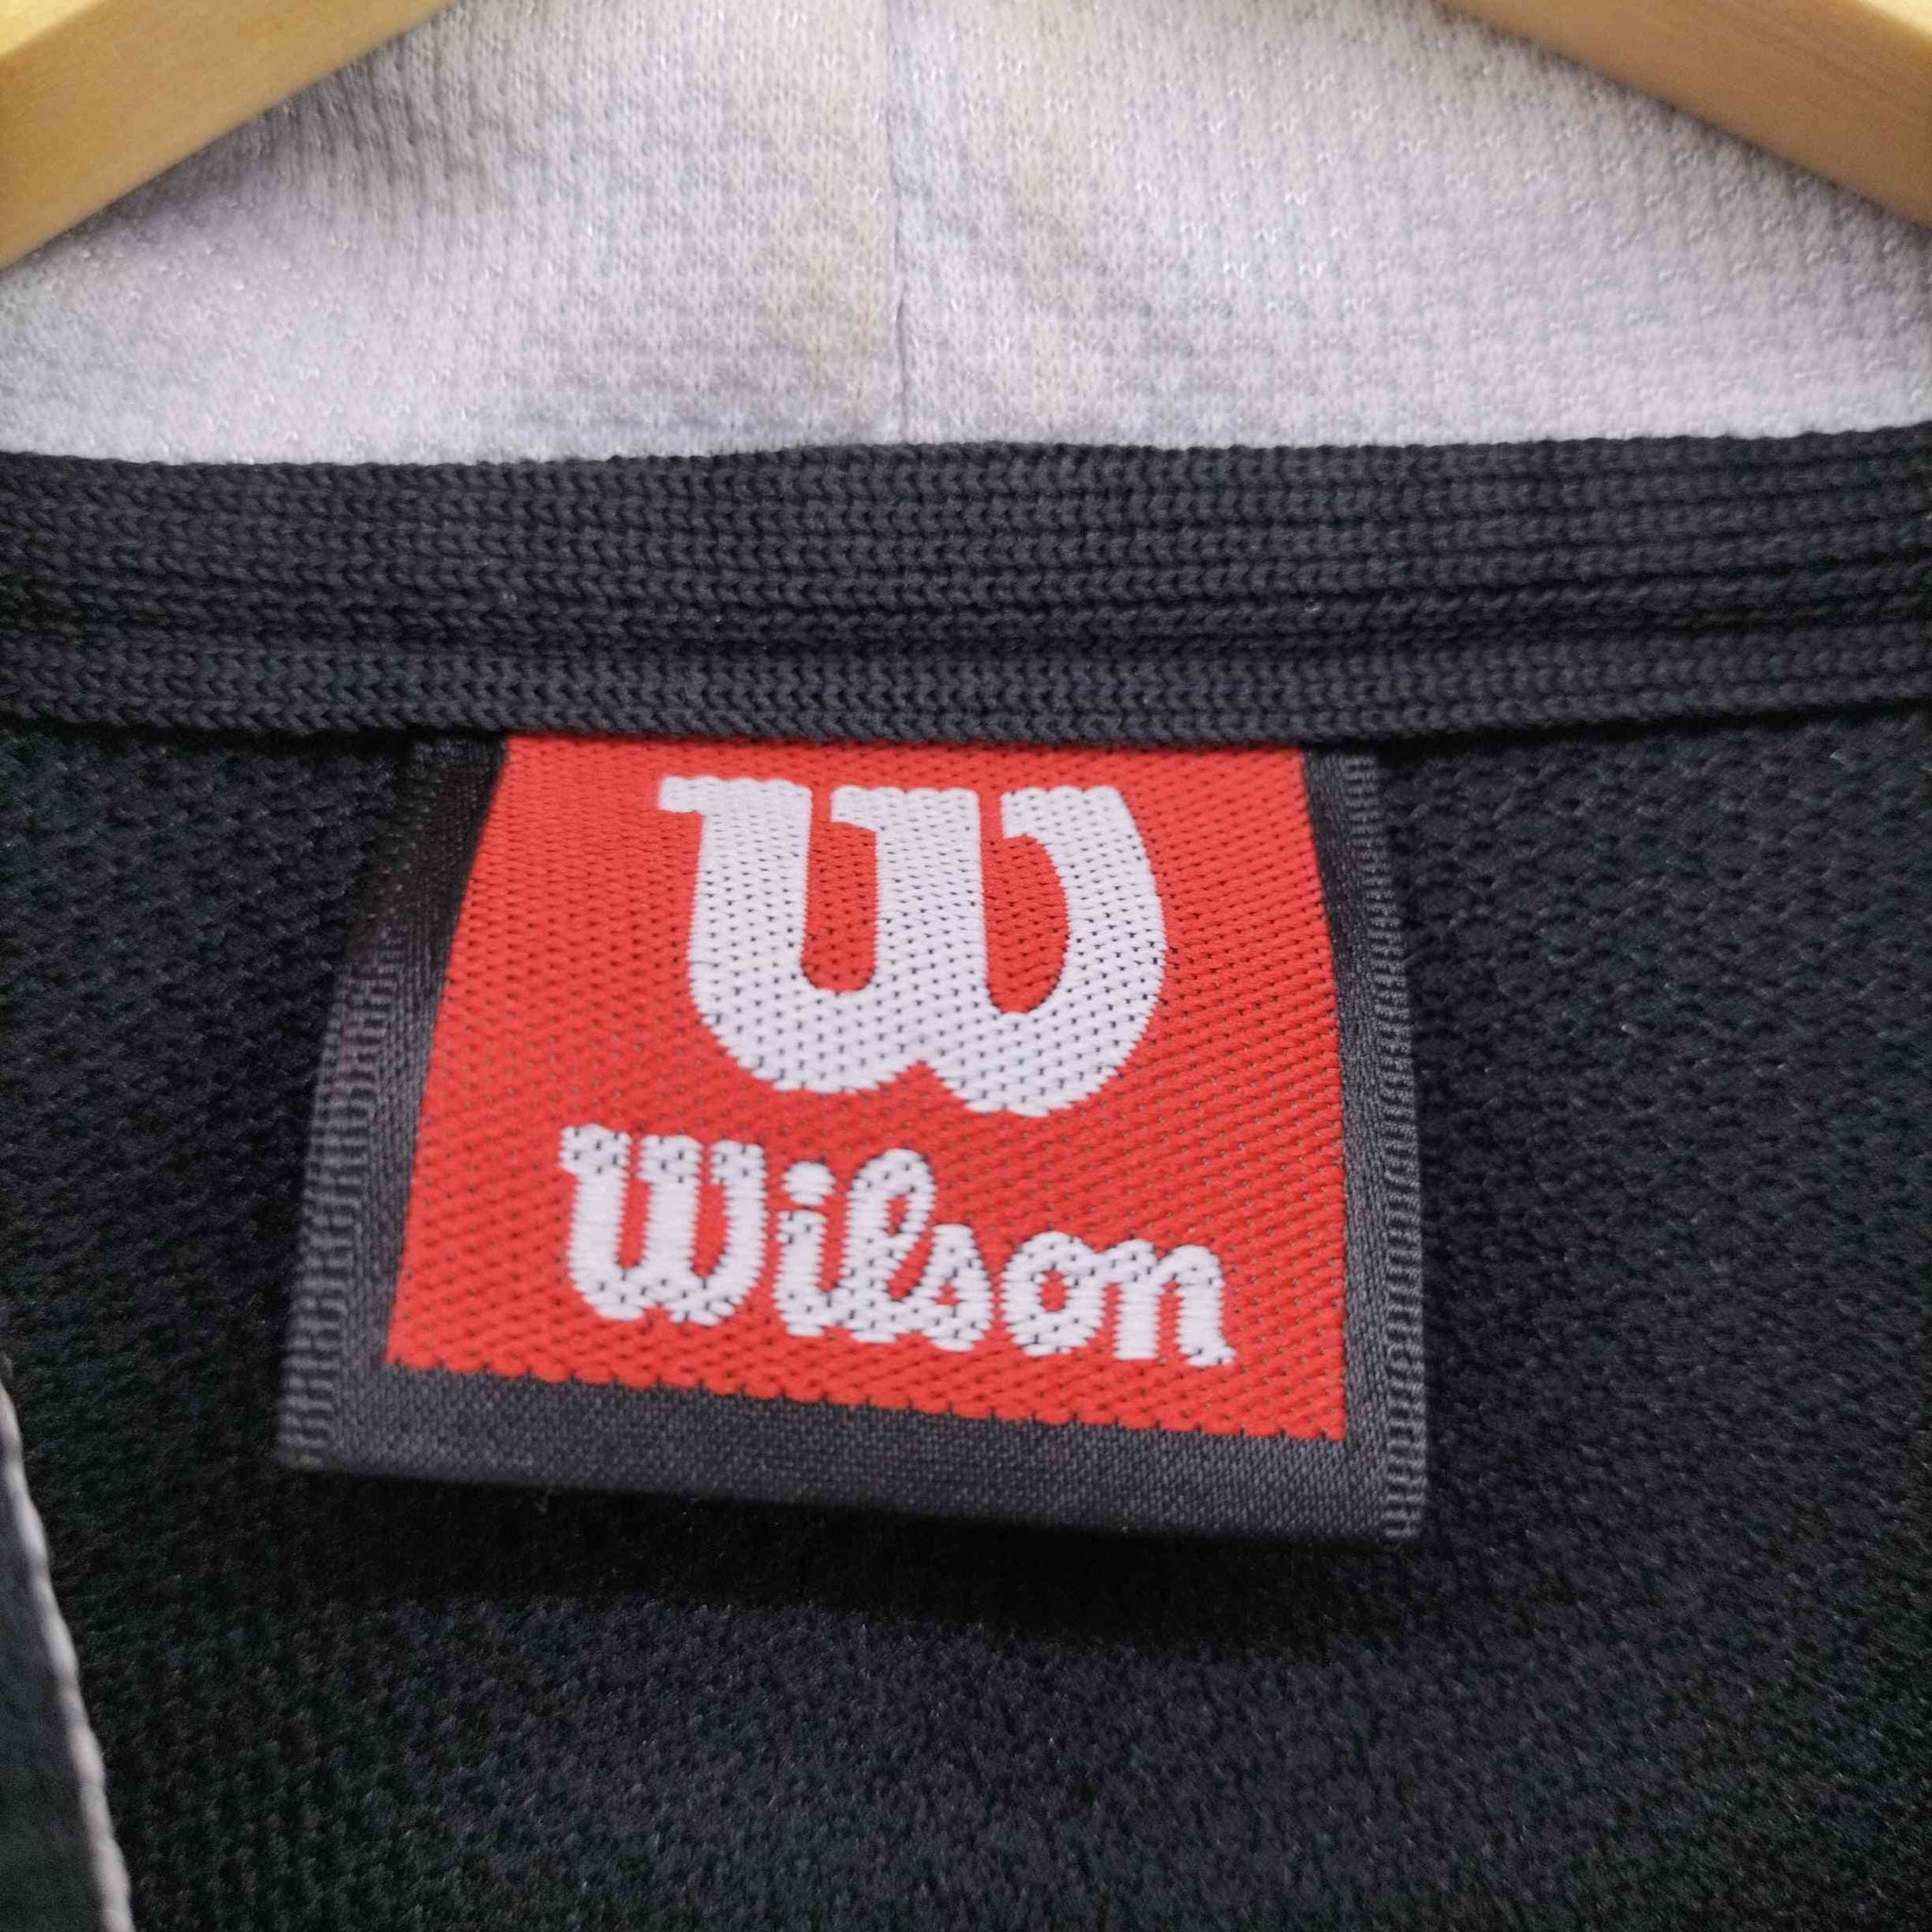 wilson(ウィルソン)90S ロゴ 刺繍 ジップアップ ジャージ パーカー